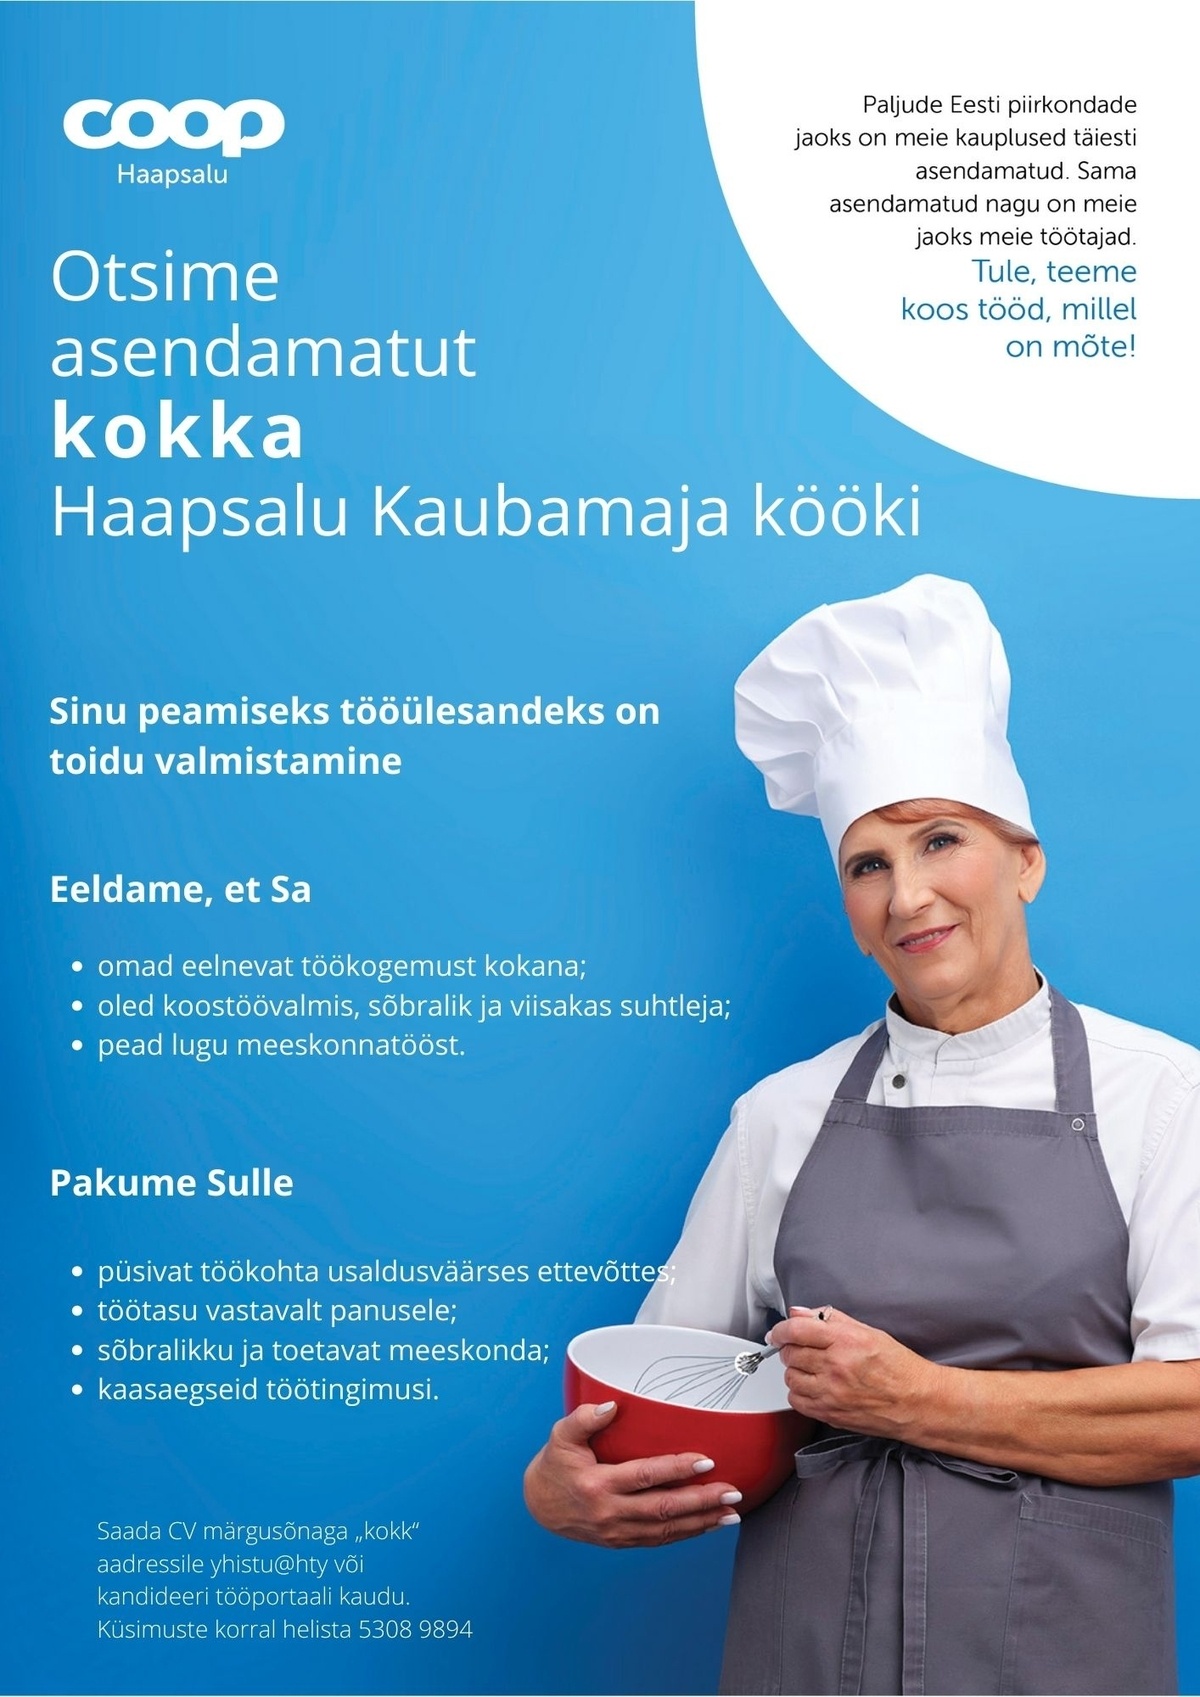 Coop Eesti Keskühistu Kokk Haapsalu Kaubamaja kööki